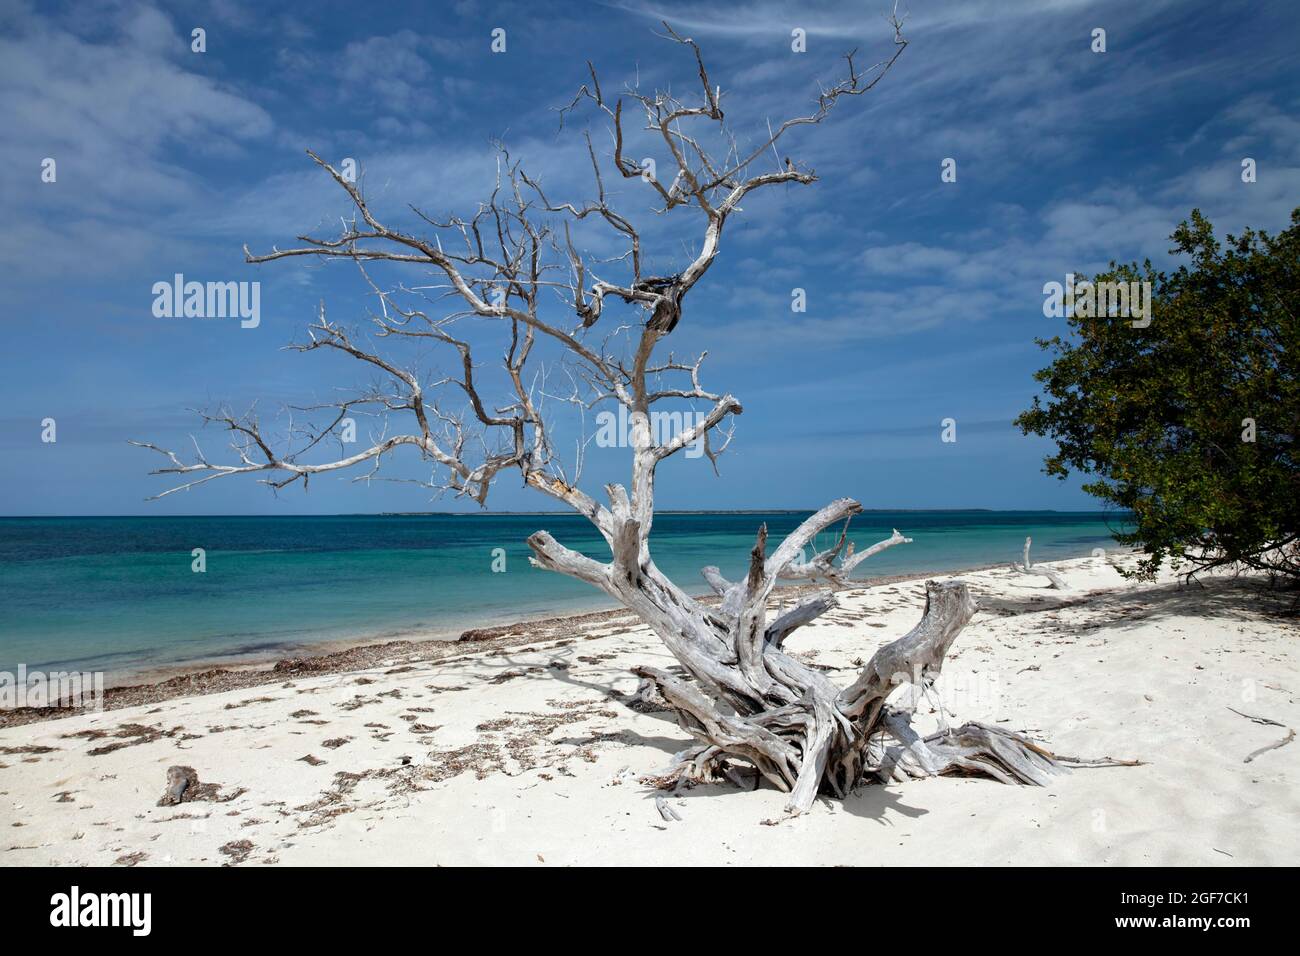 Spiaggia, morto, albero sbiancato, Anclita, Caraibi, Islanda, Cuba Foto Stock